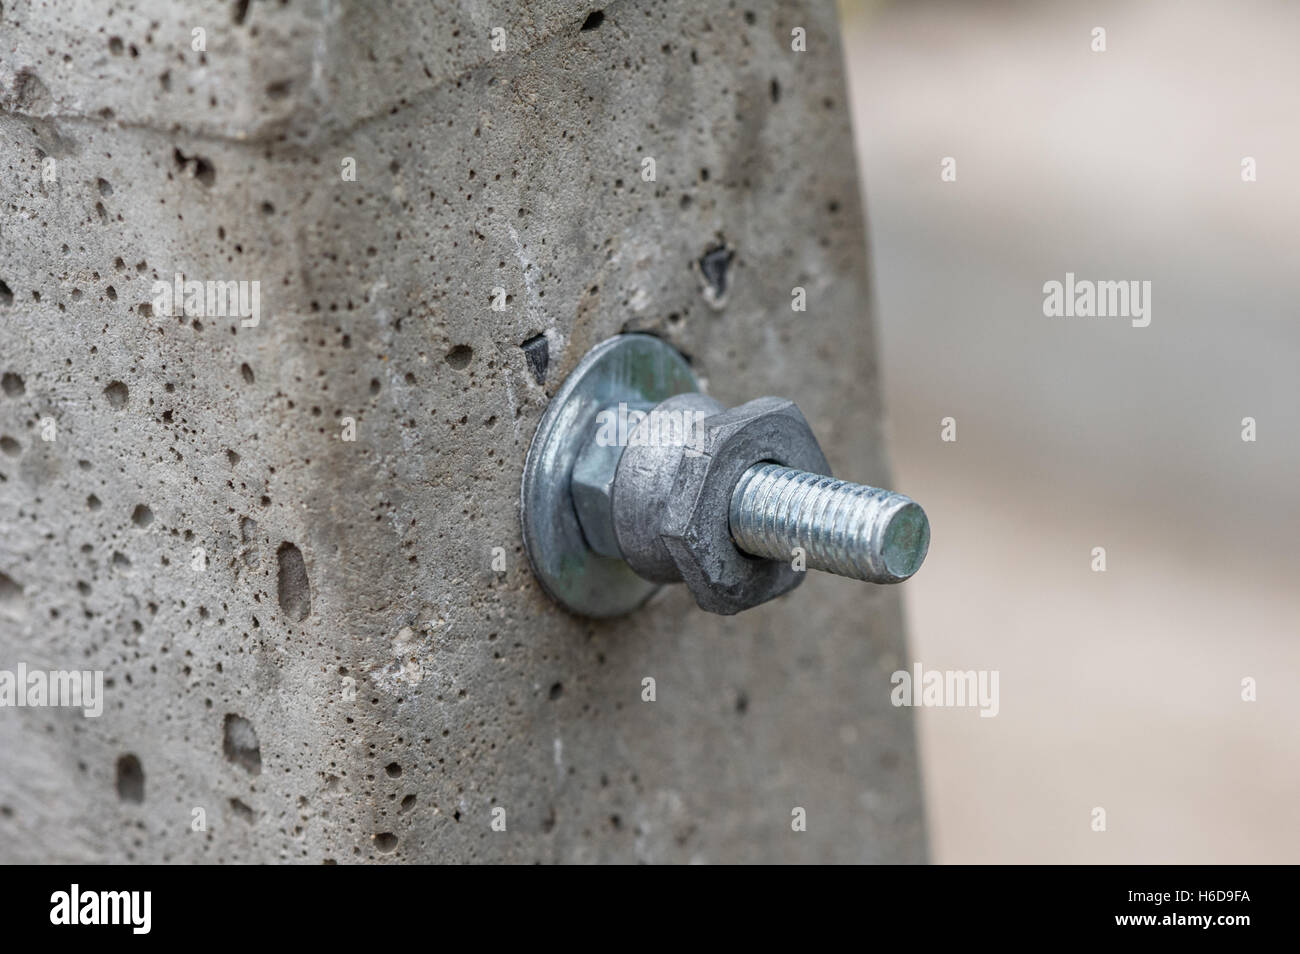 L'écrou et le boulon de fixation au moyen d'un poste en béton Photo Stock -  Alamy